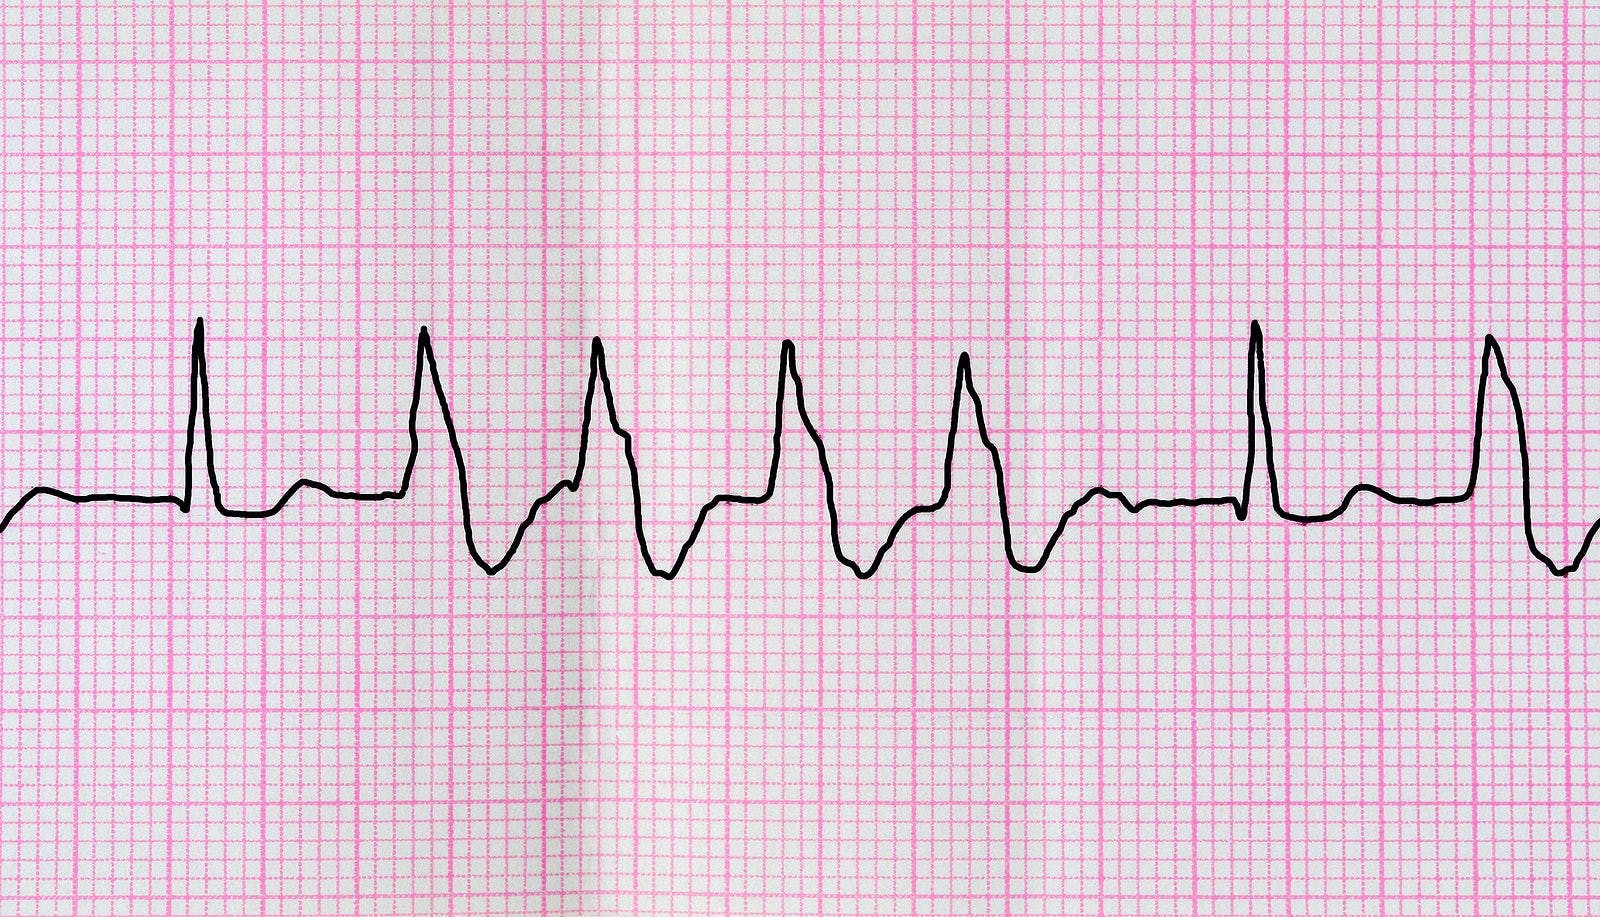 Irregular ventricular heart rhythm on ECG